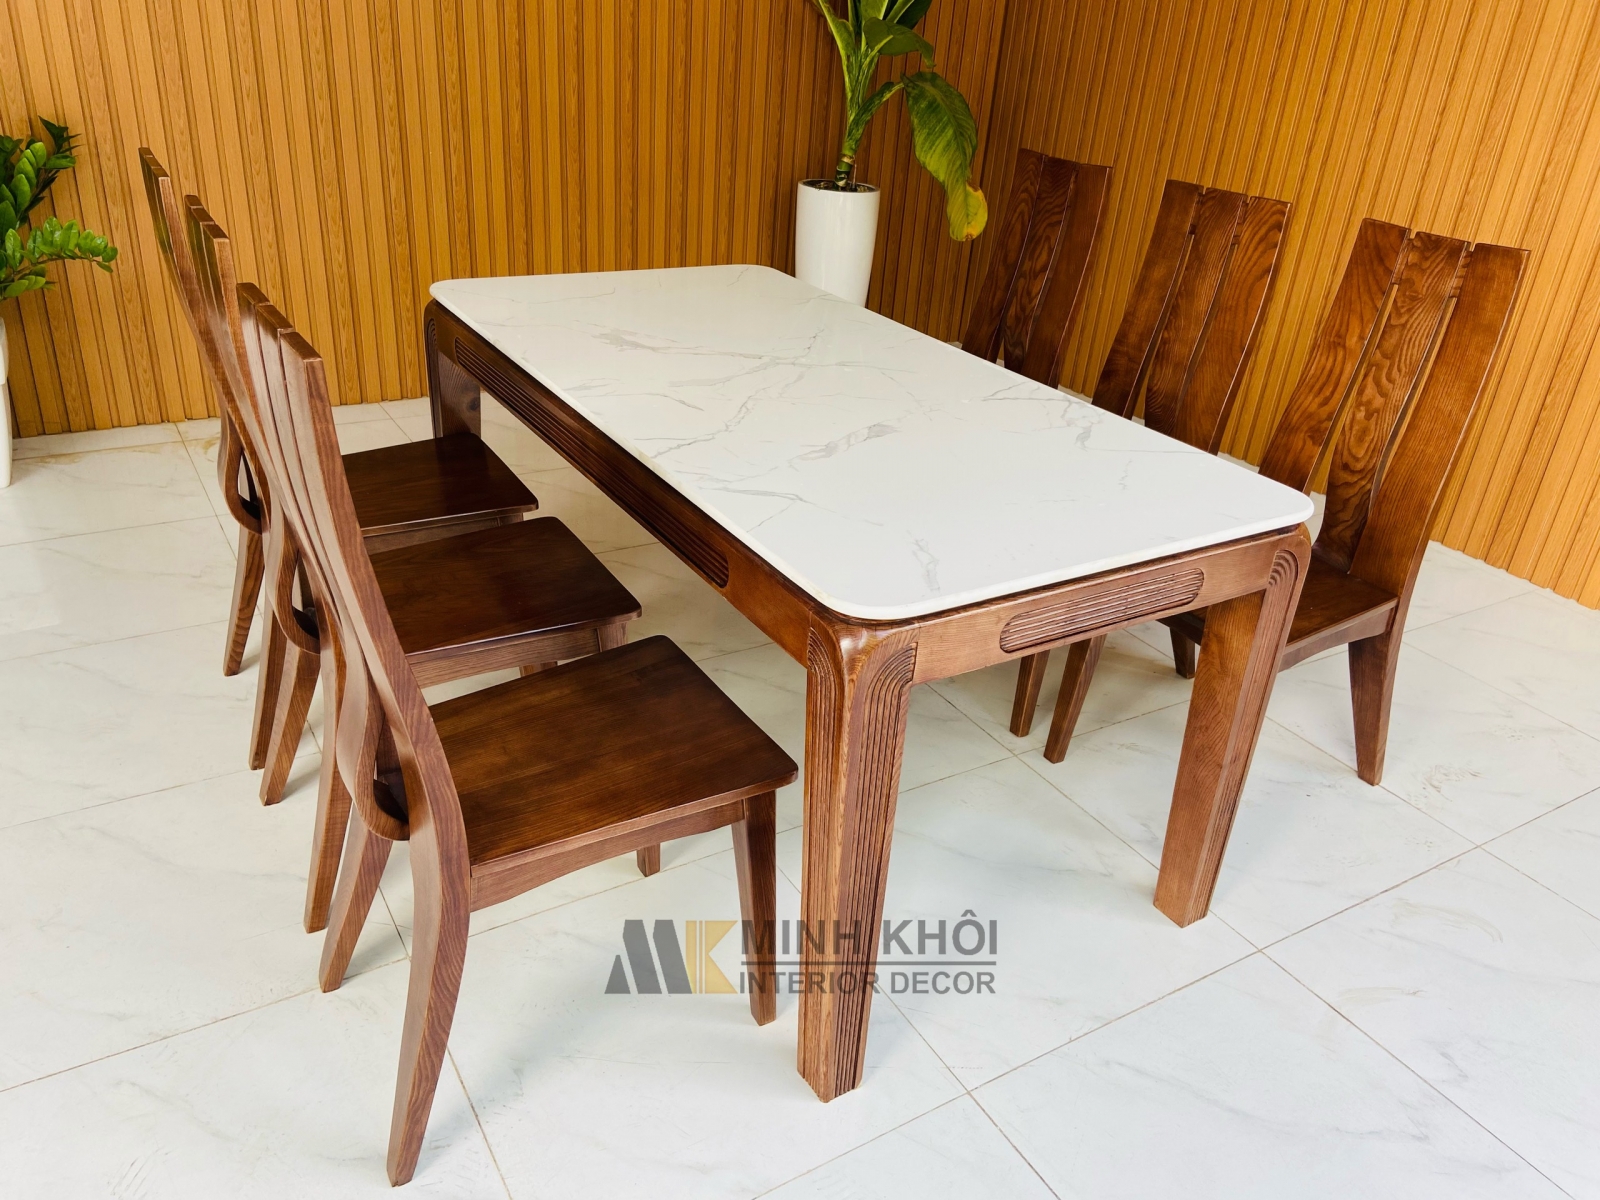 Bộ bàn ăn mặt đá trắng 6 ghế sồi là một sản phẩm đẳng cấp, tinh tế và sang trọng. Với mặt đá tự nhiên và chất liệu gỗ sồi cao cấp, bạn sẽ có được một bộ bàn ăn hoàn hảo cho các buổi tiệc gia đình hay những bữa tiệc bạn bè.